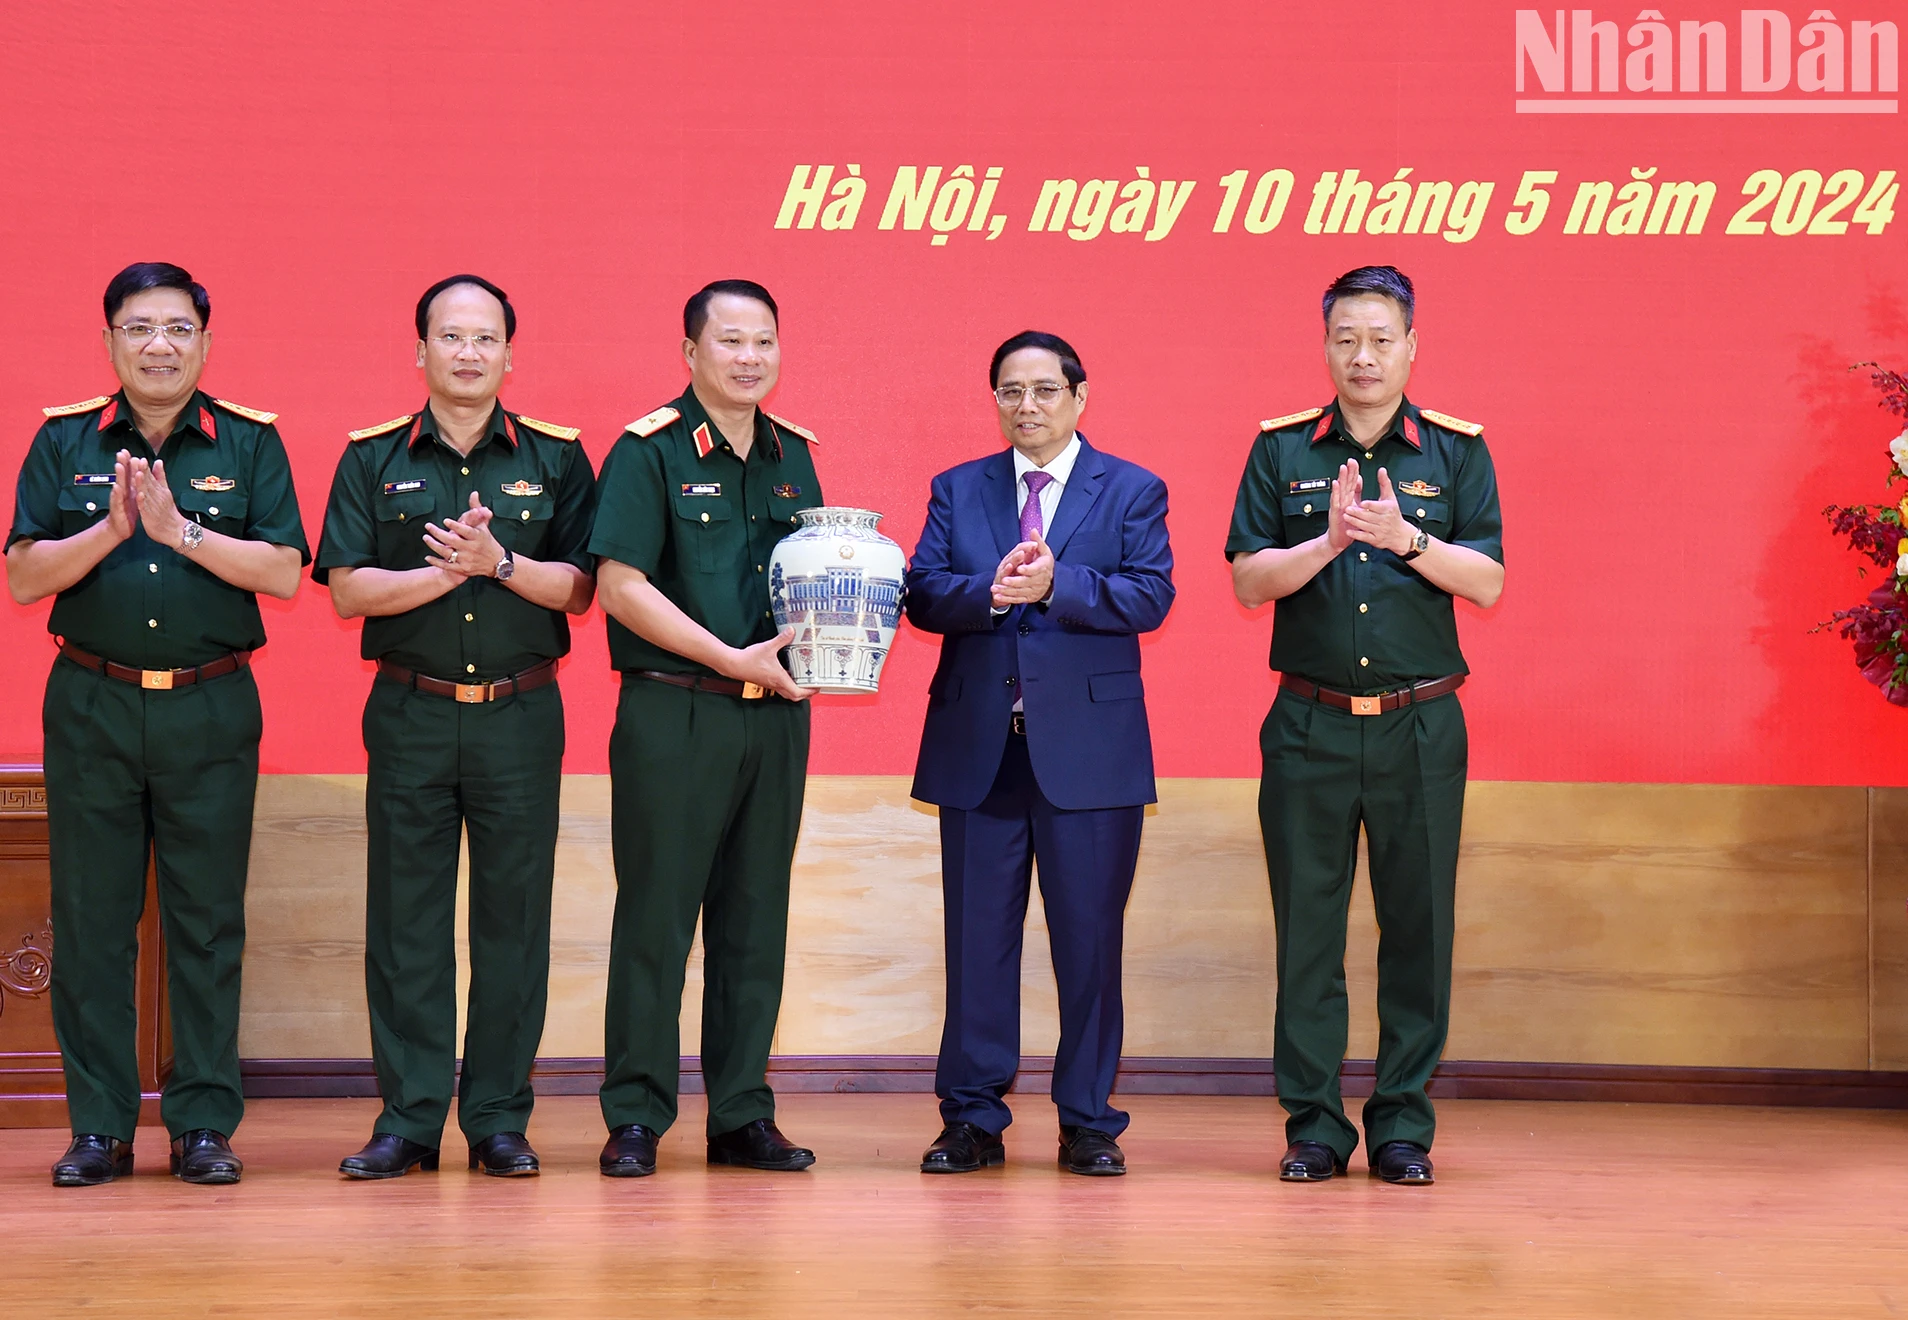 [Ảnh] Thủ tướng Phạm Minh Chính thăm và làm việc tại Binh đoàn 12 ảnh 13